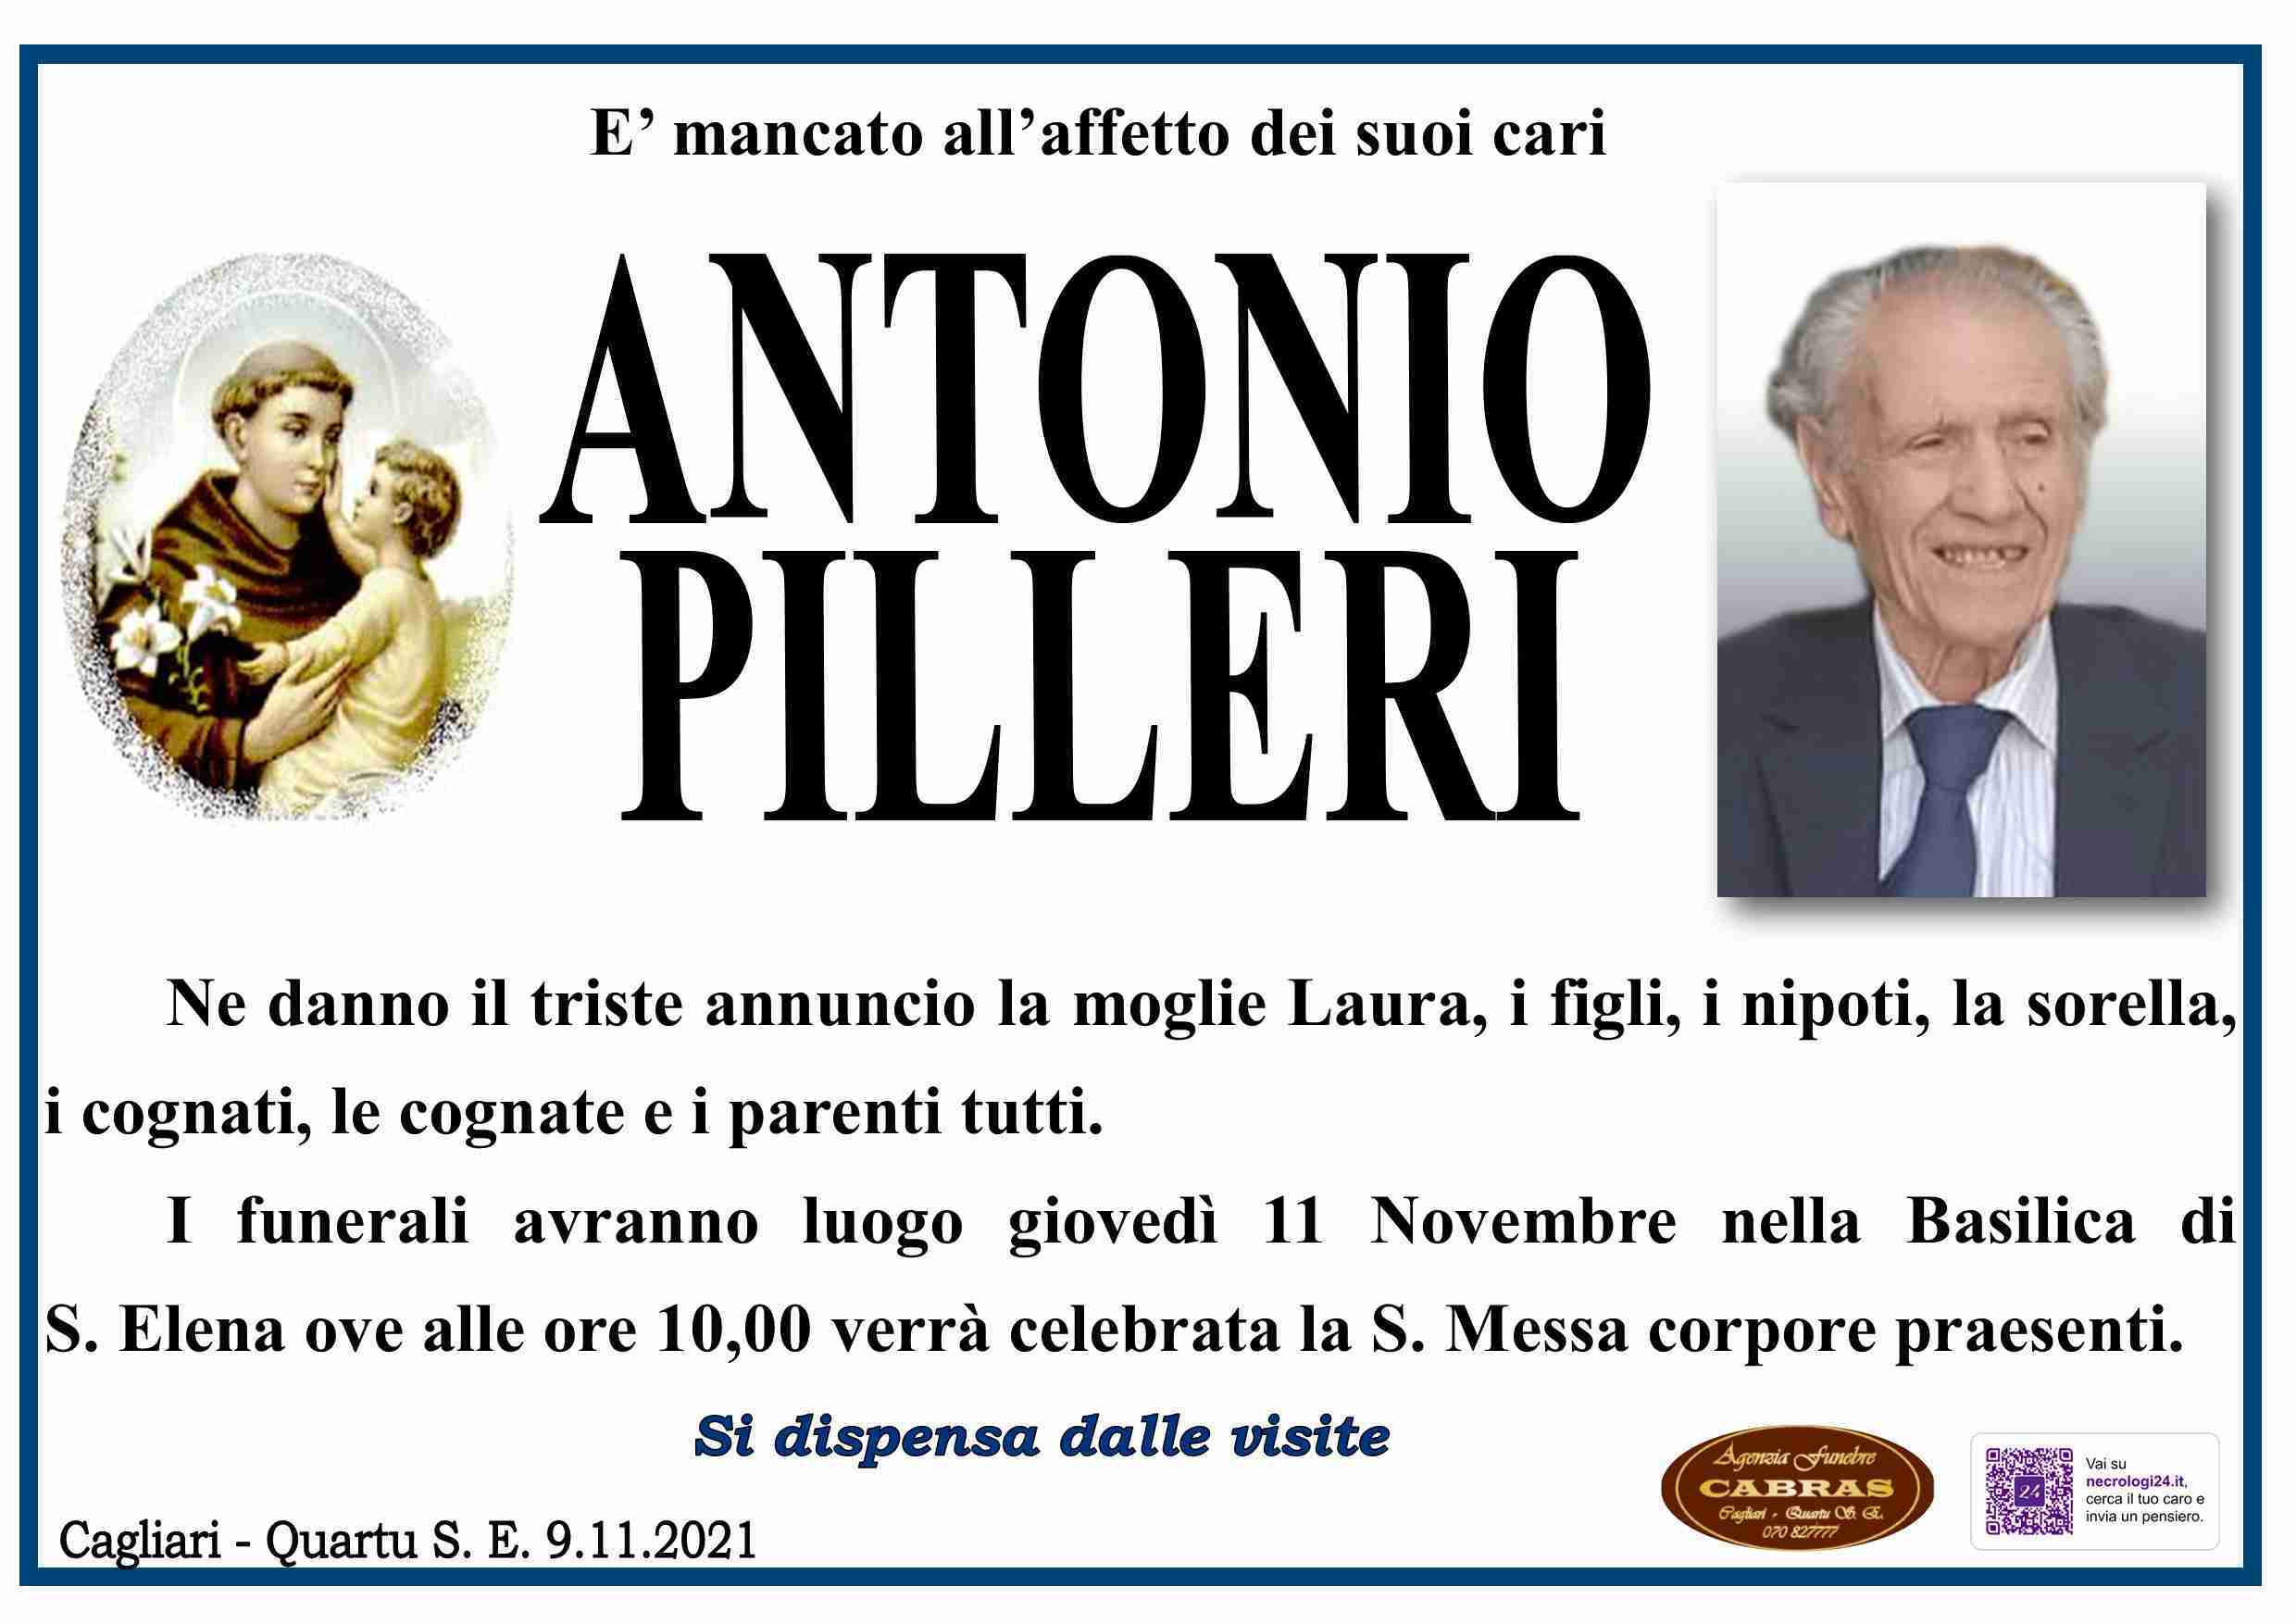 Antonio Pilleri